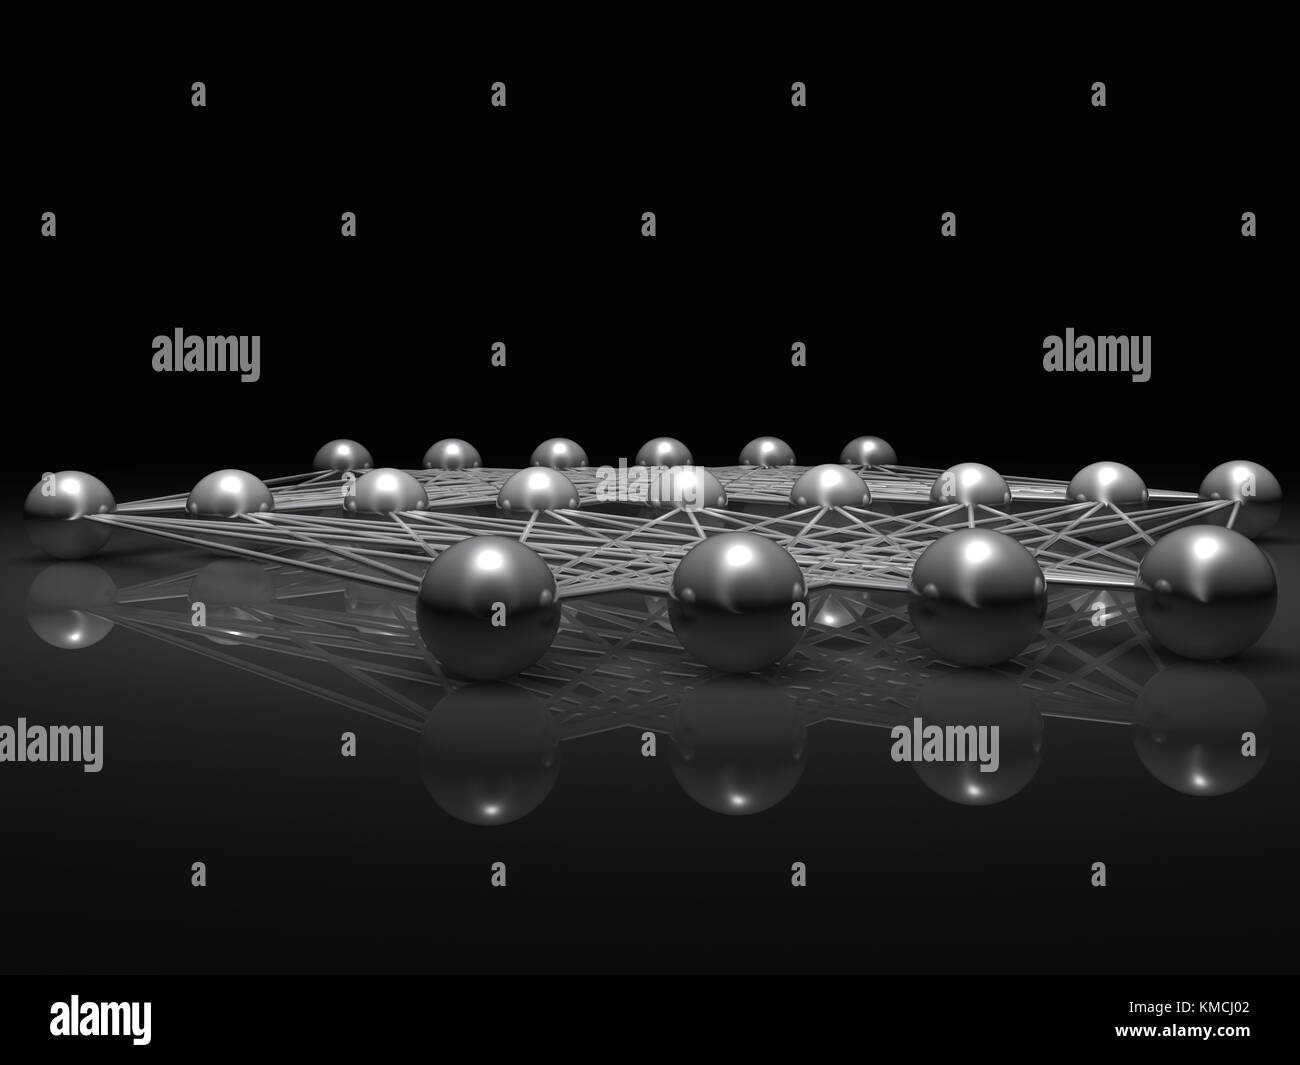 Künstliche flachen neuronales Netzwerk Struktur, Illustration mit Schaltplan metallische Modell, 3D-Rendering Stockfoto